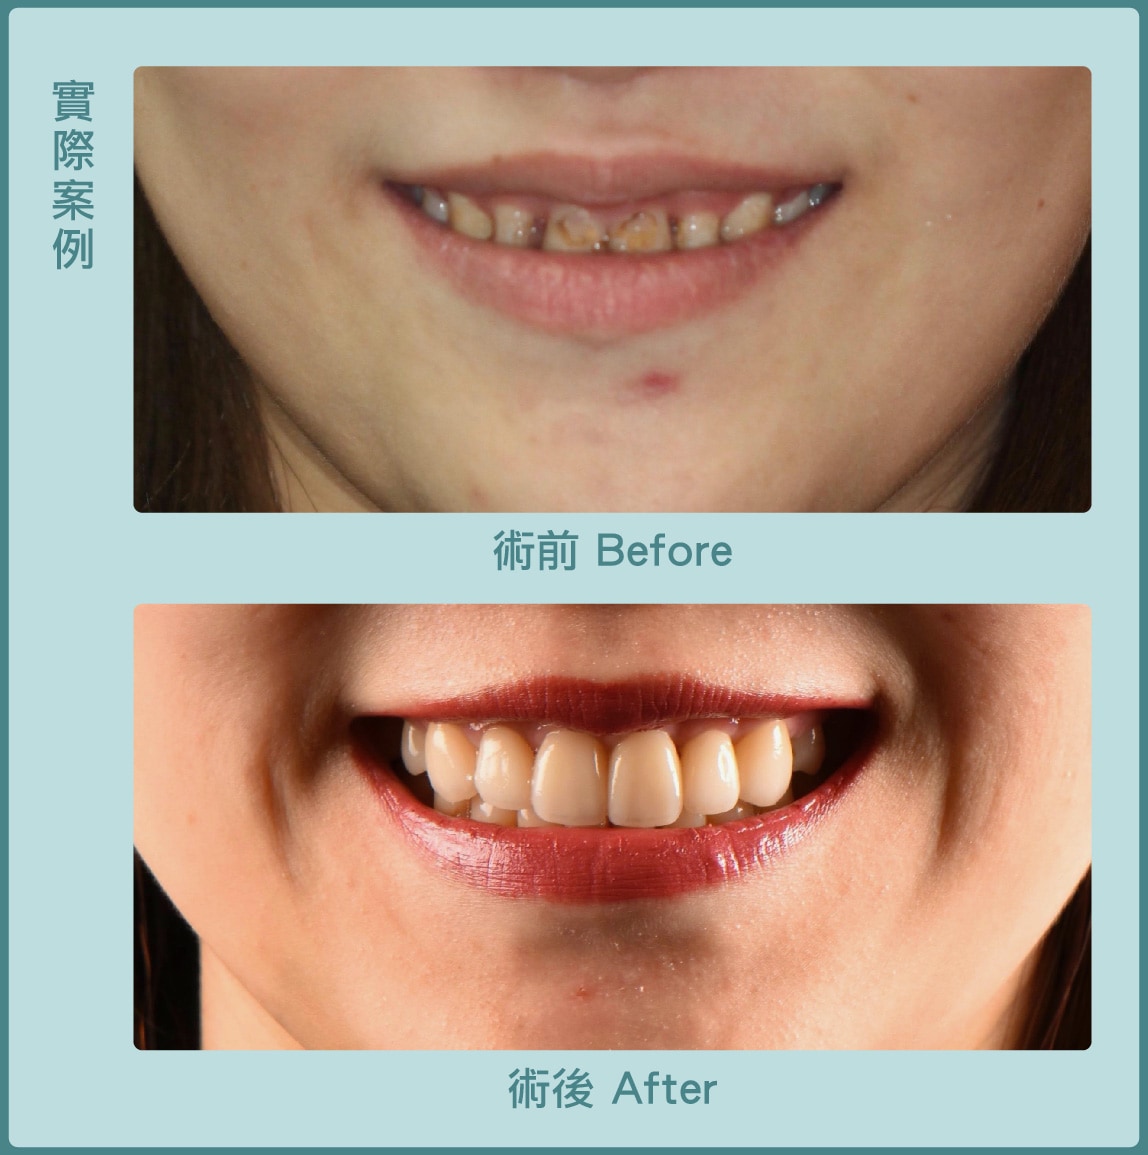 牙冠增長術-笑露牙齦-瓷牙貼片-術前術後比較-葉立維醫師-桃園